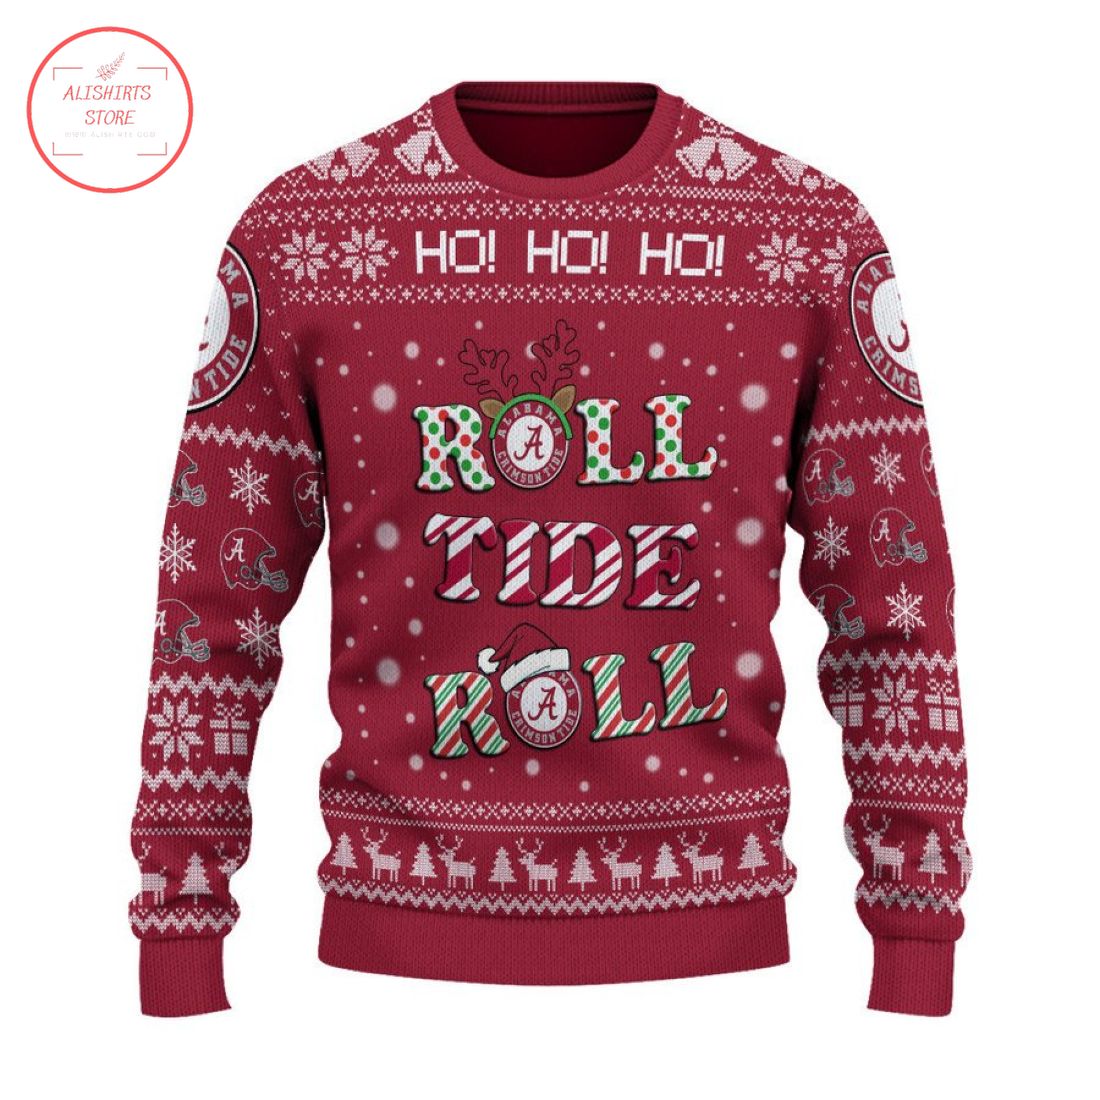 Alabama Roll Tide Roll Ho Ho Ho Ugly Christmas Sweater